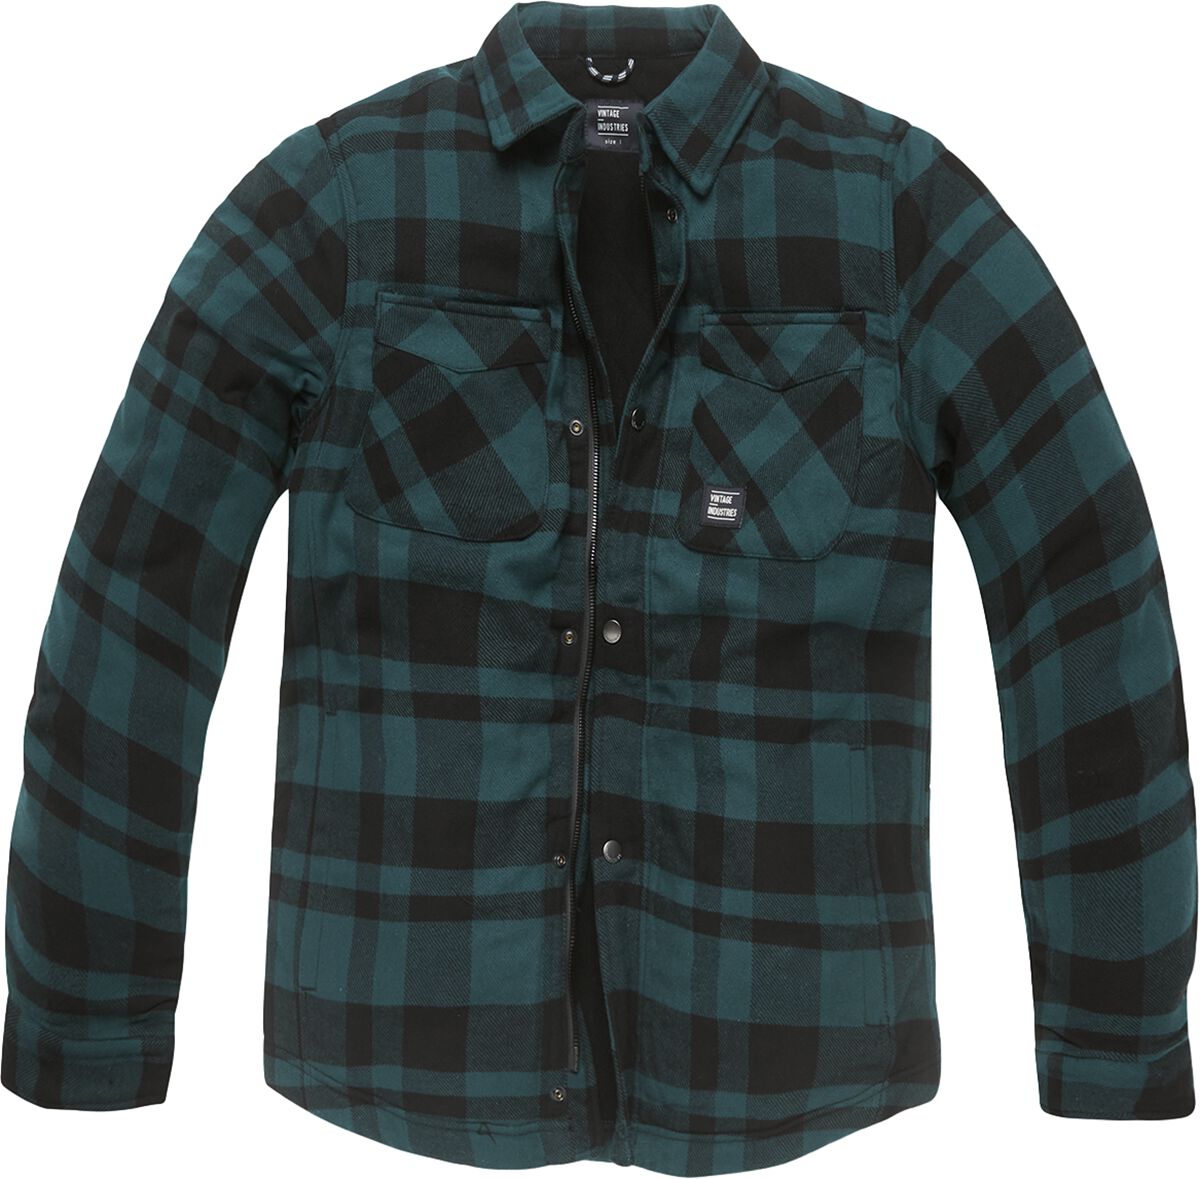 Vintage Industries Übergangsjacke - Darwin Shirt Jacket - S bis M - für Männer - Größe S - grün